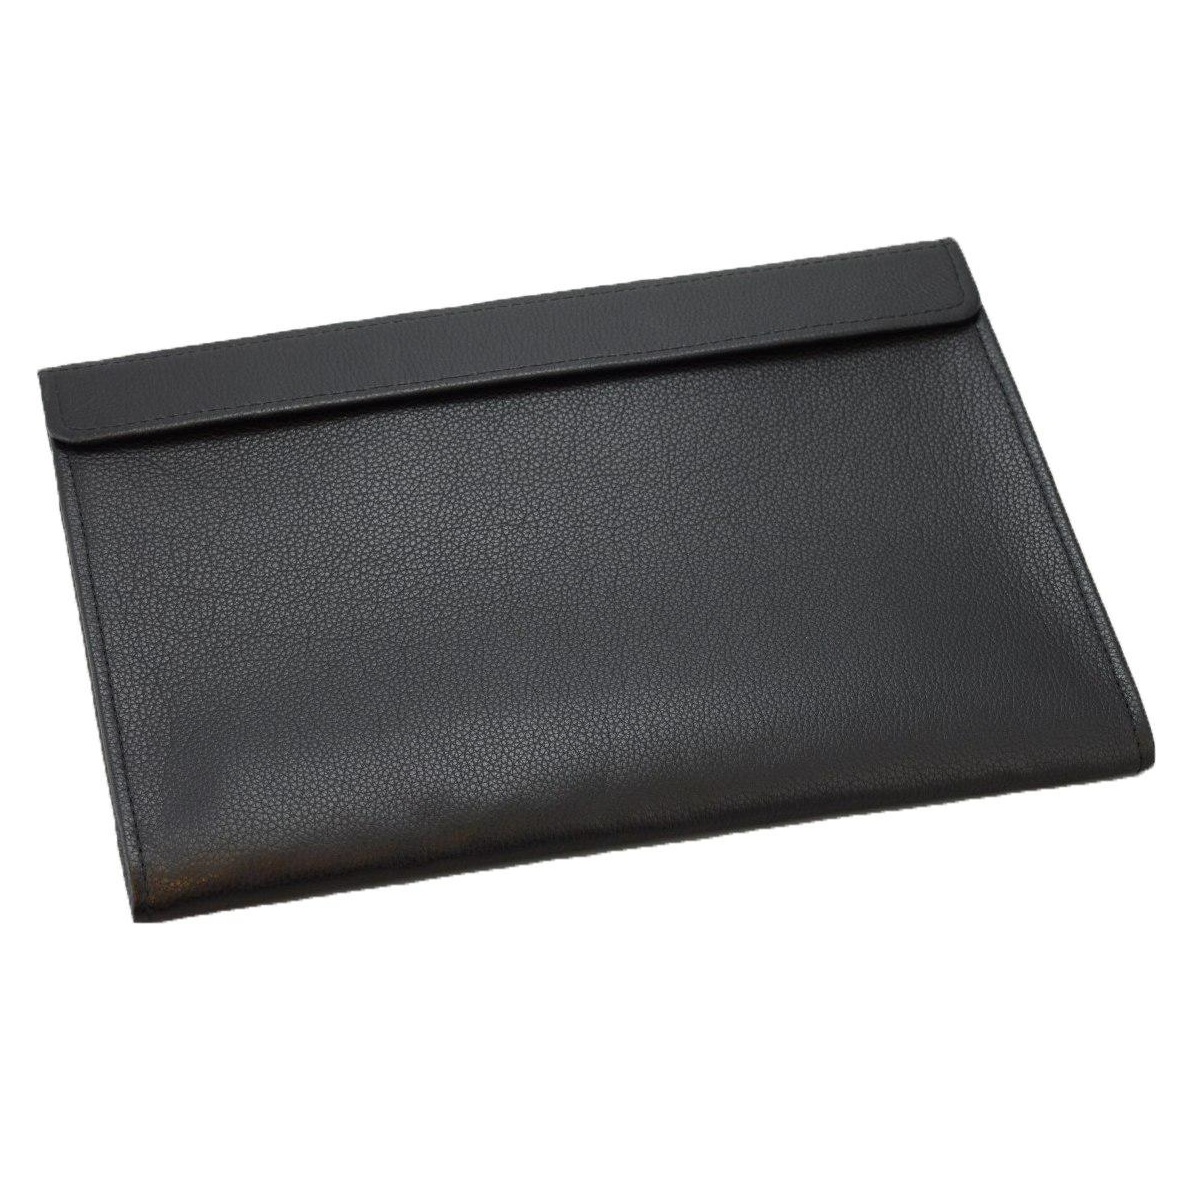 Кожаный чехол-конверт Alexander Black для Macbook Air 13/Macbook Pro 13